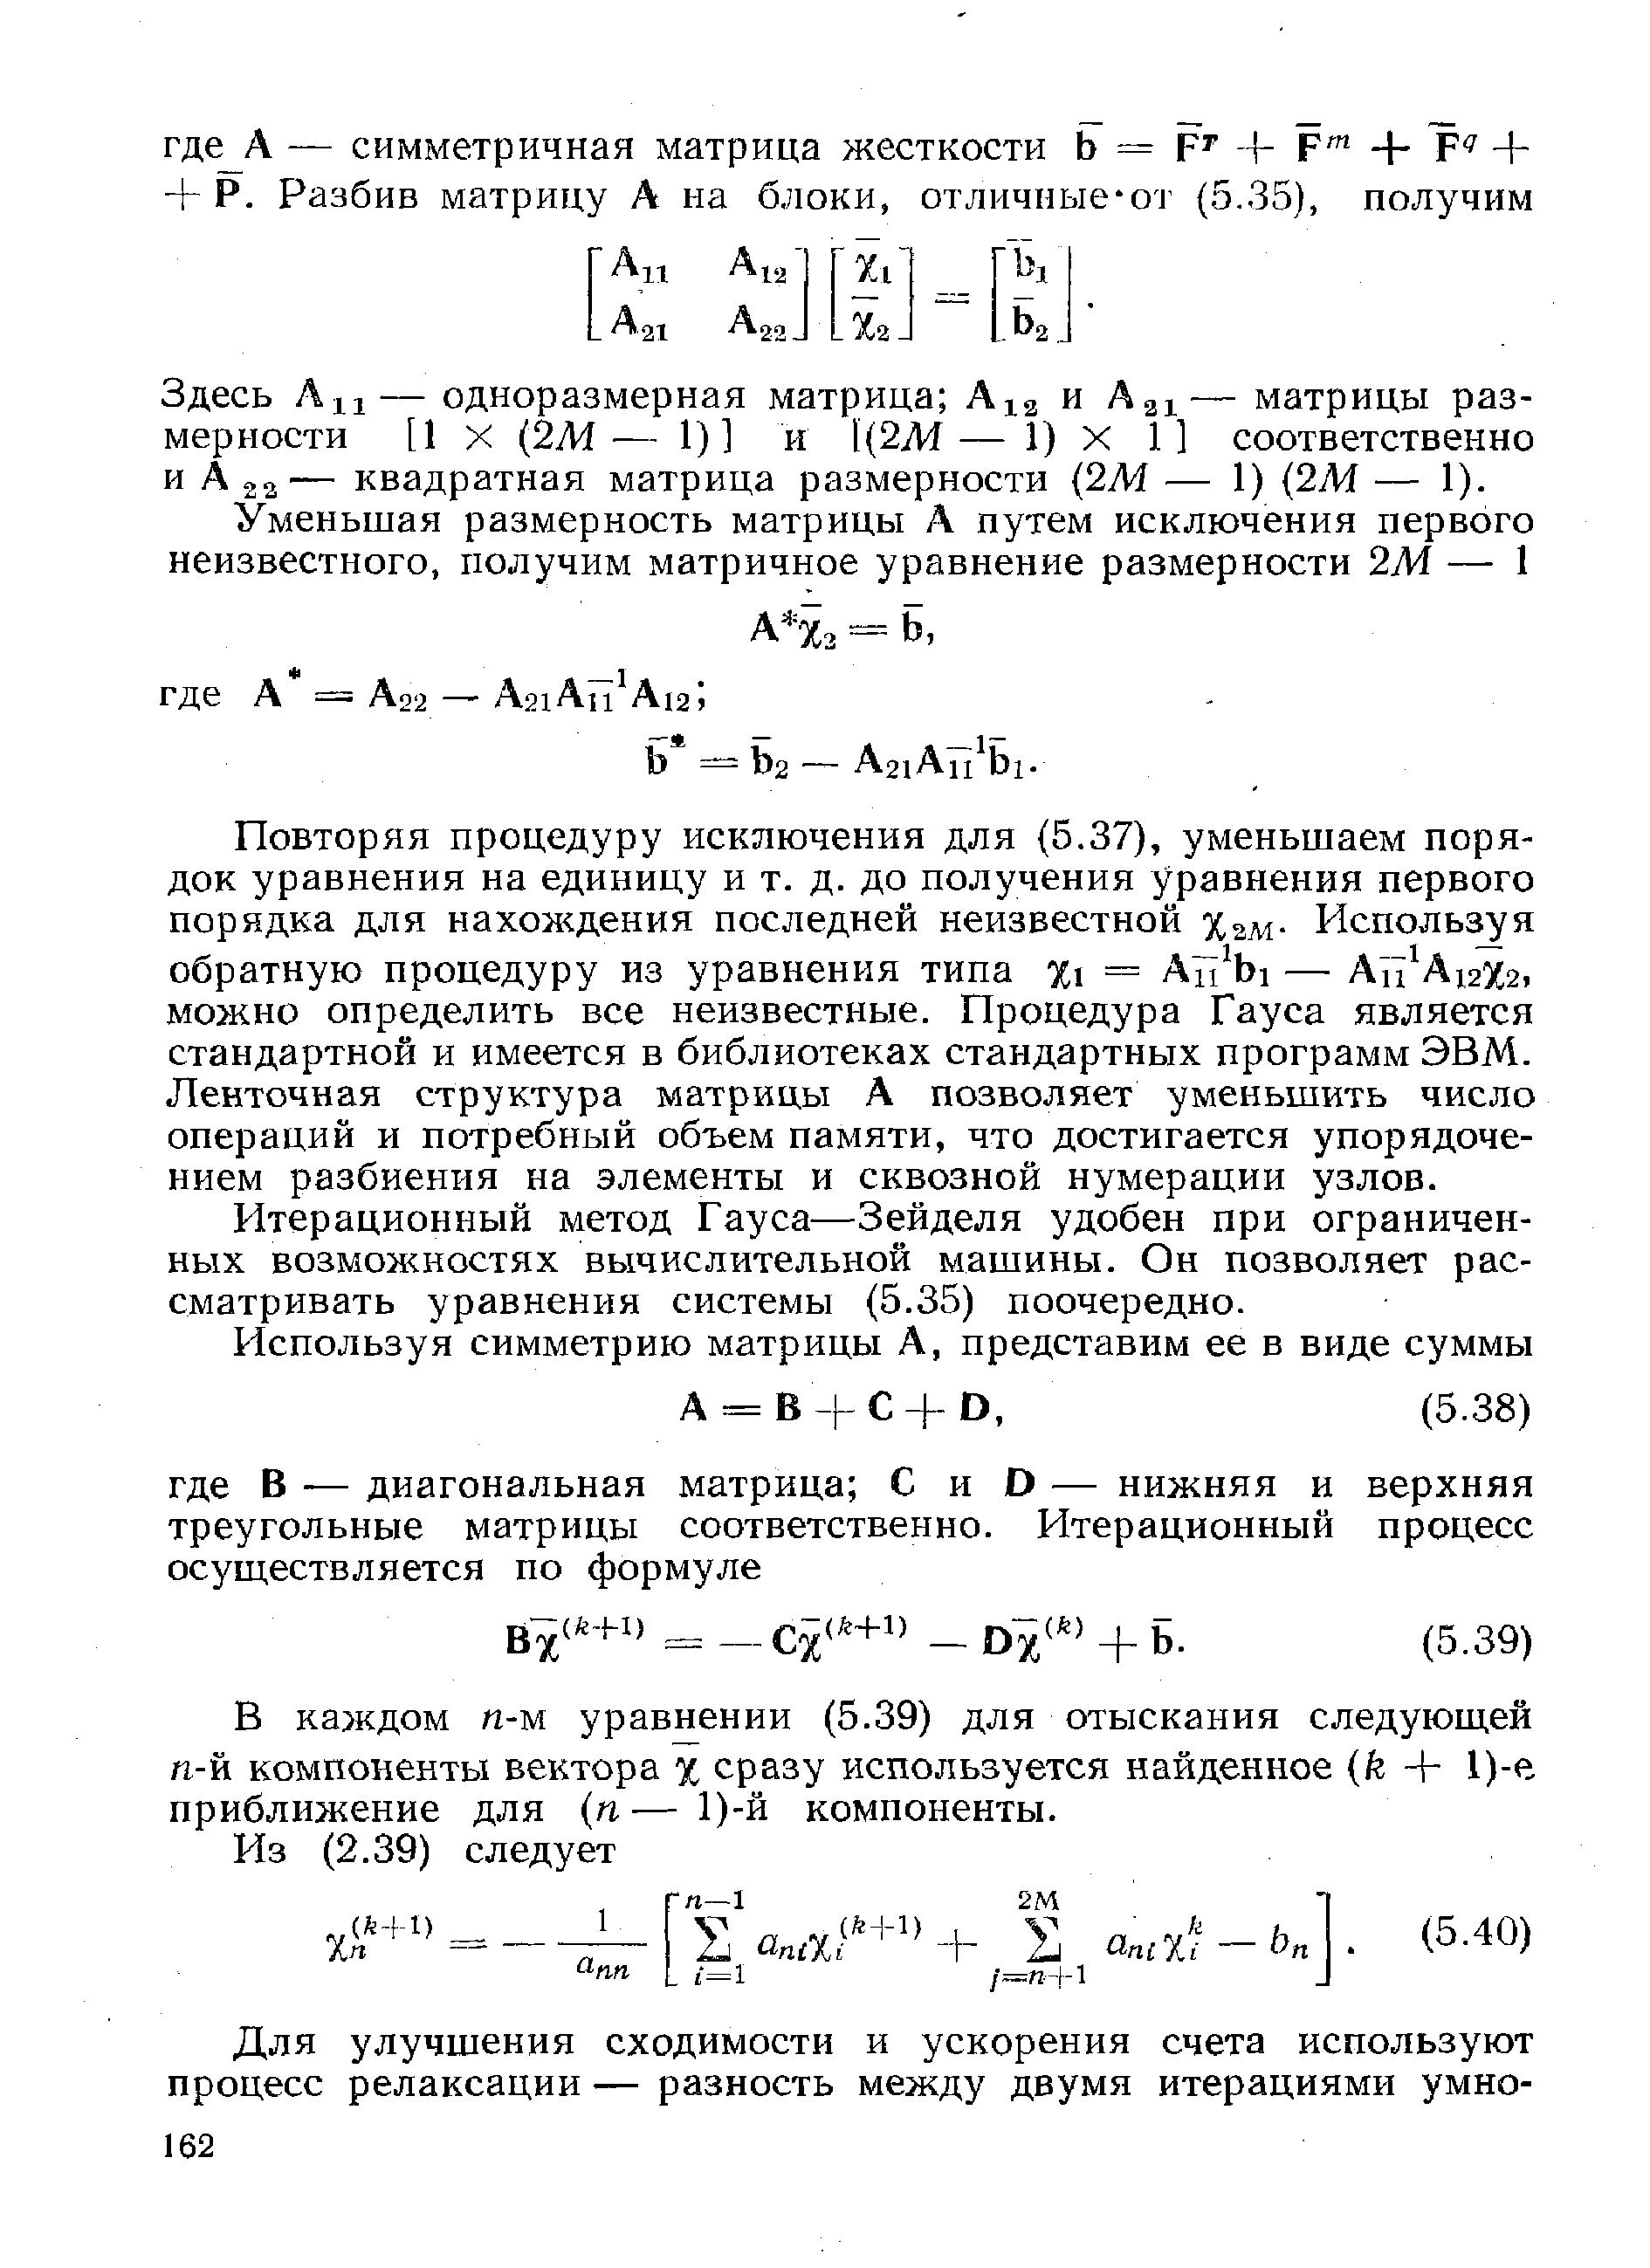 Итерационный метод Гауса—Зейделя удобен при ограниченных возможностях вычислительной машины. Он позволяет рассматривать уравнения системы (5.35) поочередно.
